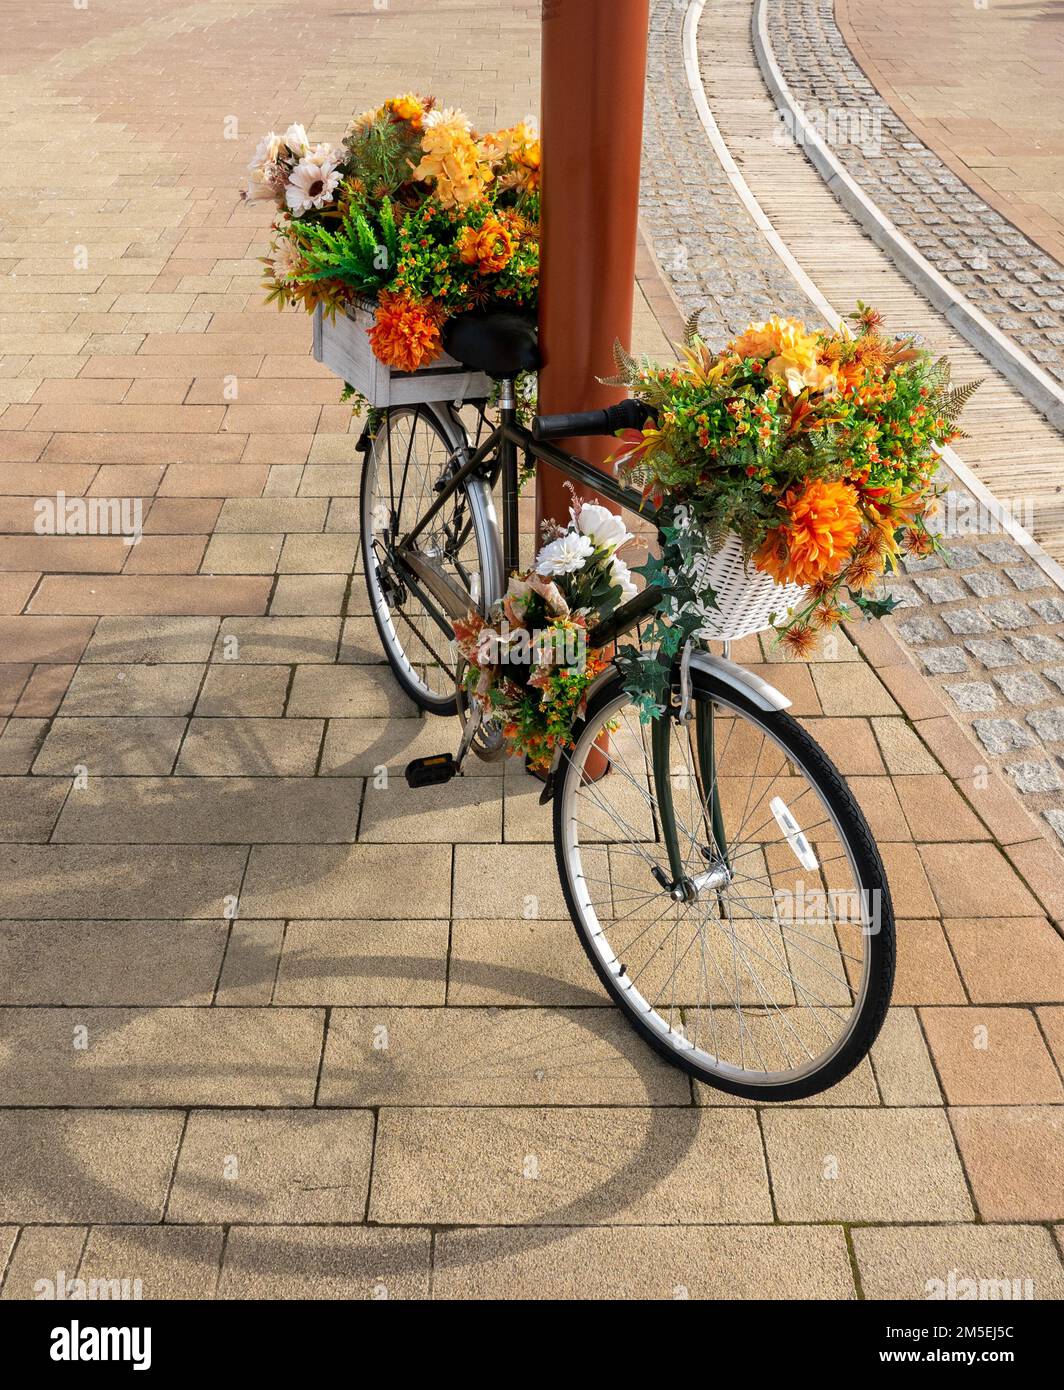 La vecchia bicicletta viene utilizzata per una mostra di fiori in un centro commerciale Foto Stock